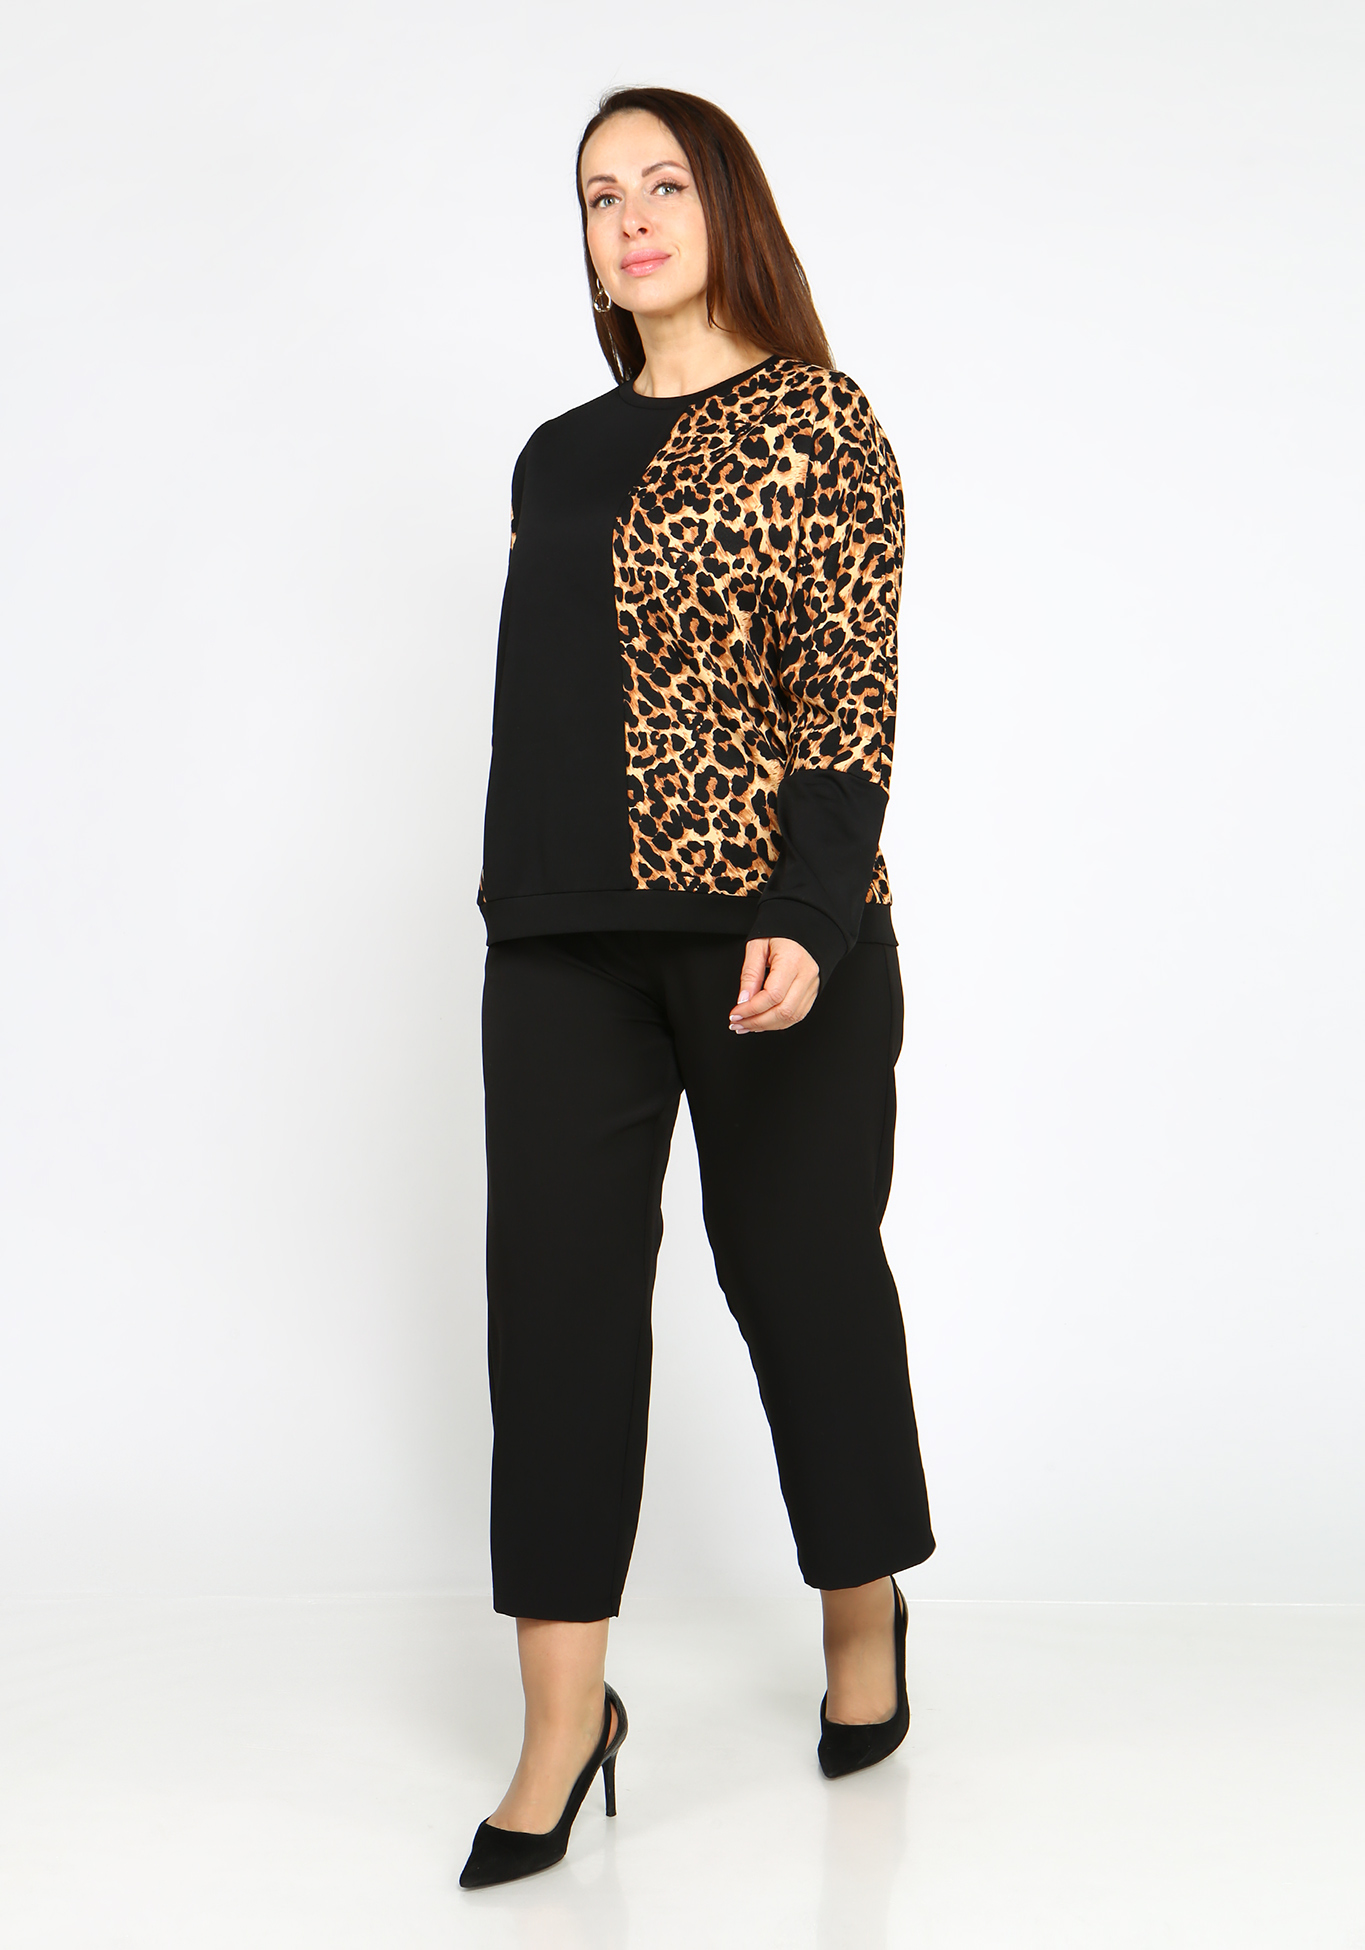 Блуза трикотажная с леопардовым принтом Elletto Life, размер 48, цвет коричневый - фото 2